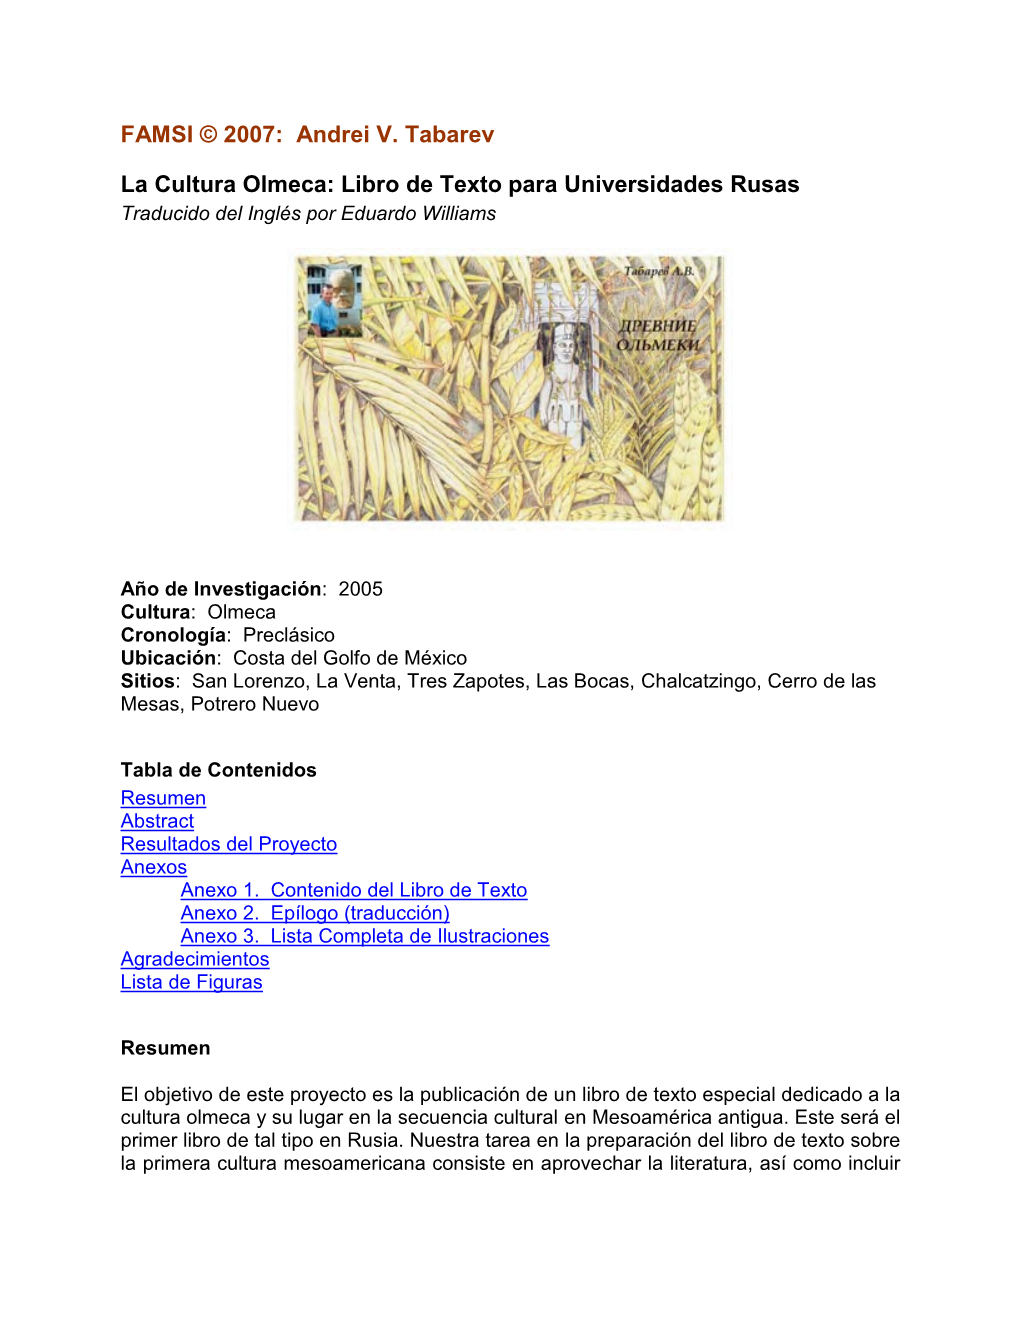 La Cultura Olmeca: Libro De Texto Para Universidades Rusas Traducido Del Inglés Por Eduardo Williams